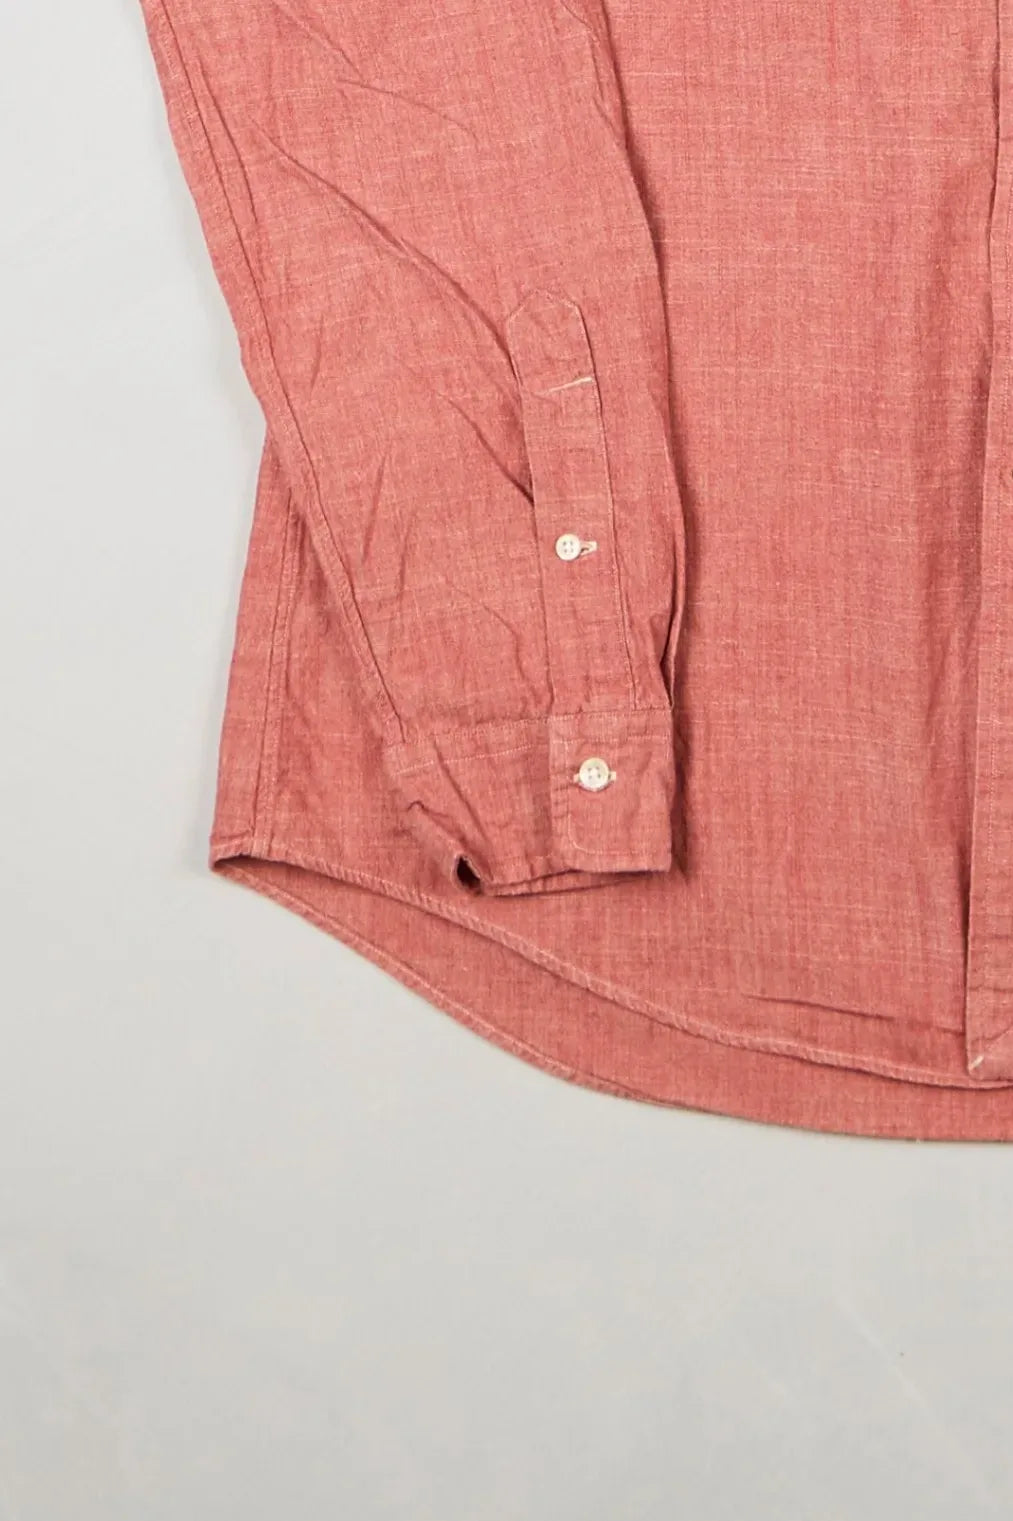 Ralph Lauren - Shirt (XL) Bottom Left